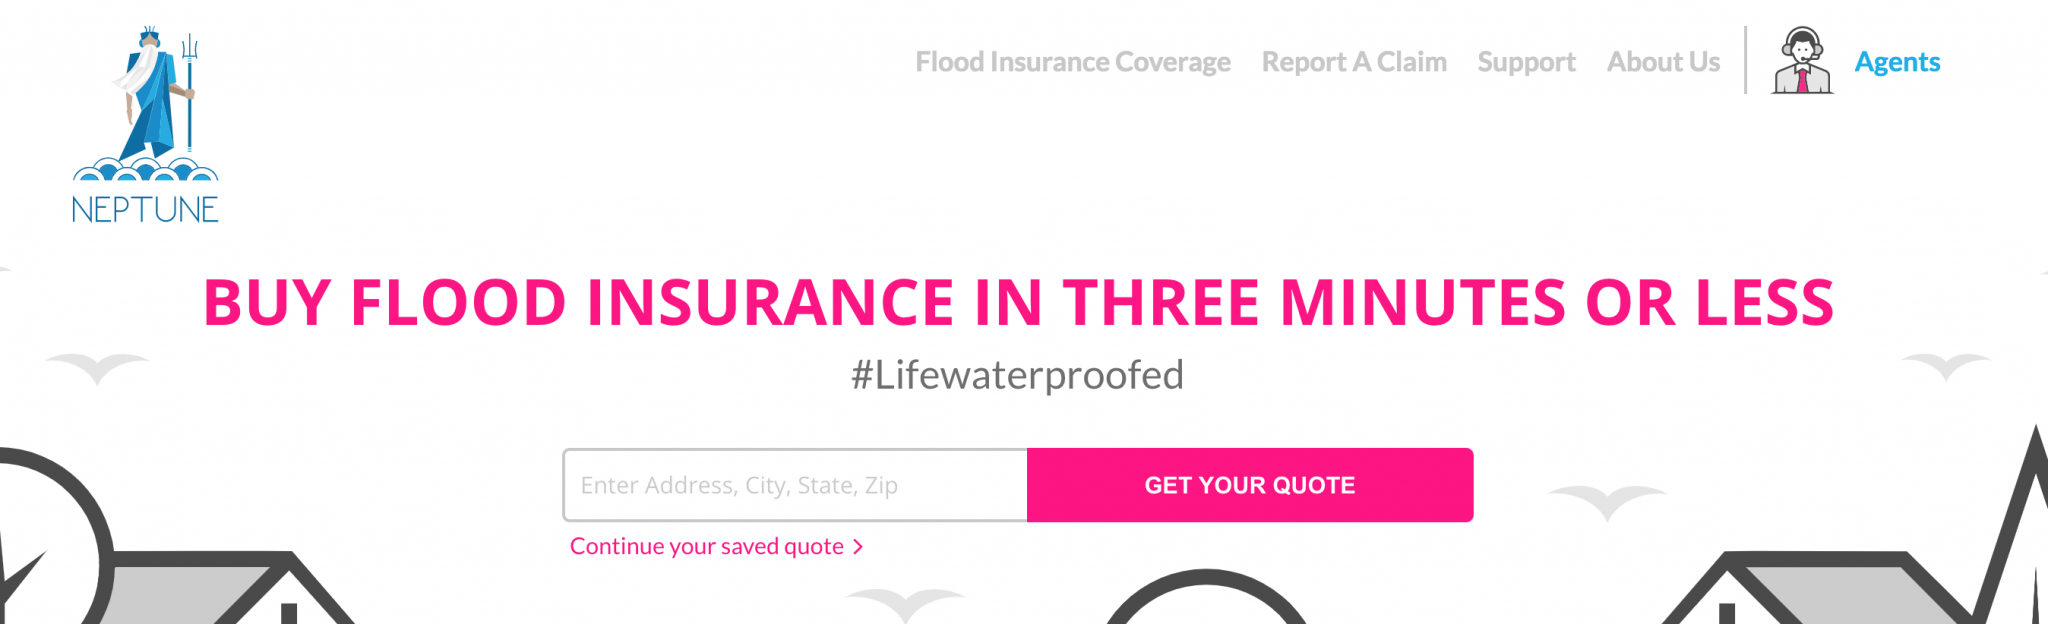 neptune flood insurance bbb